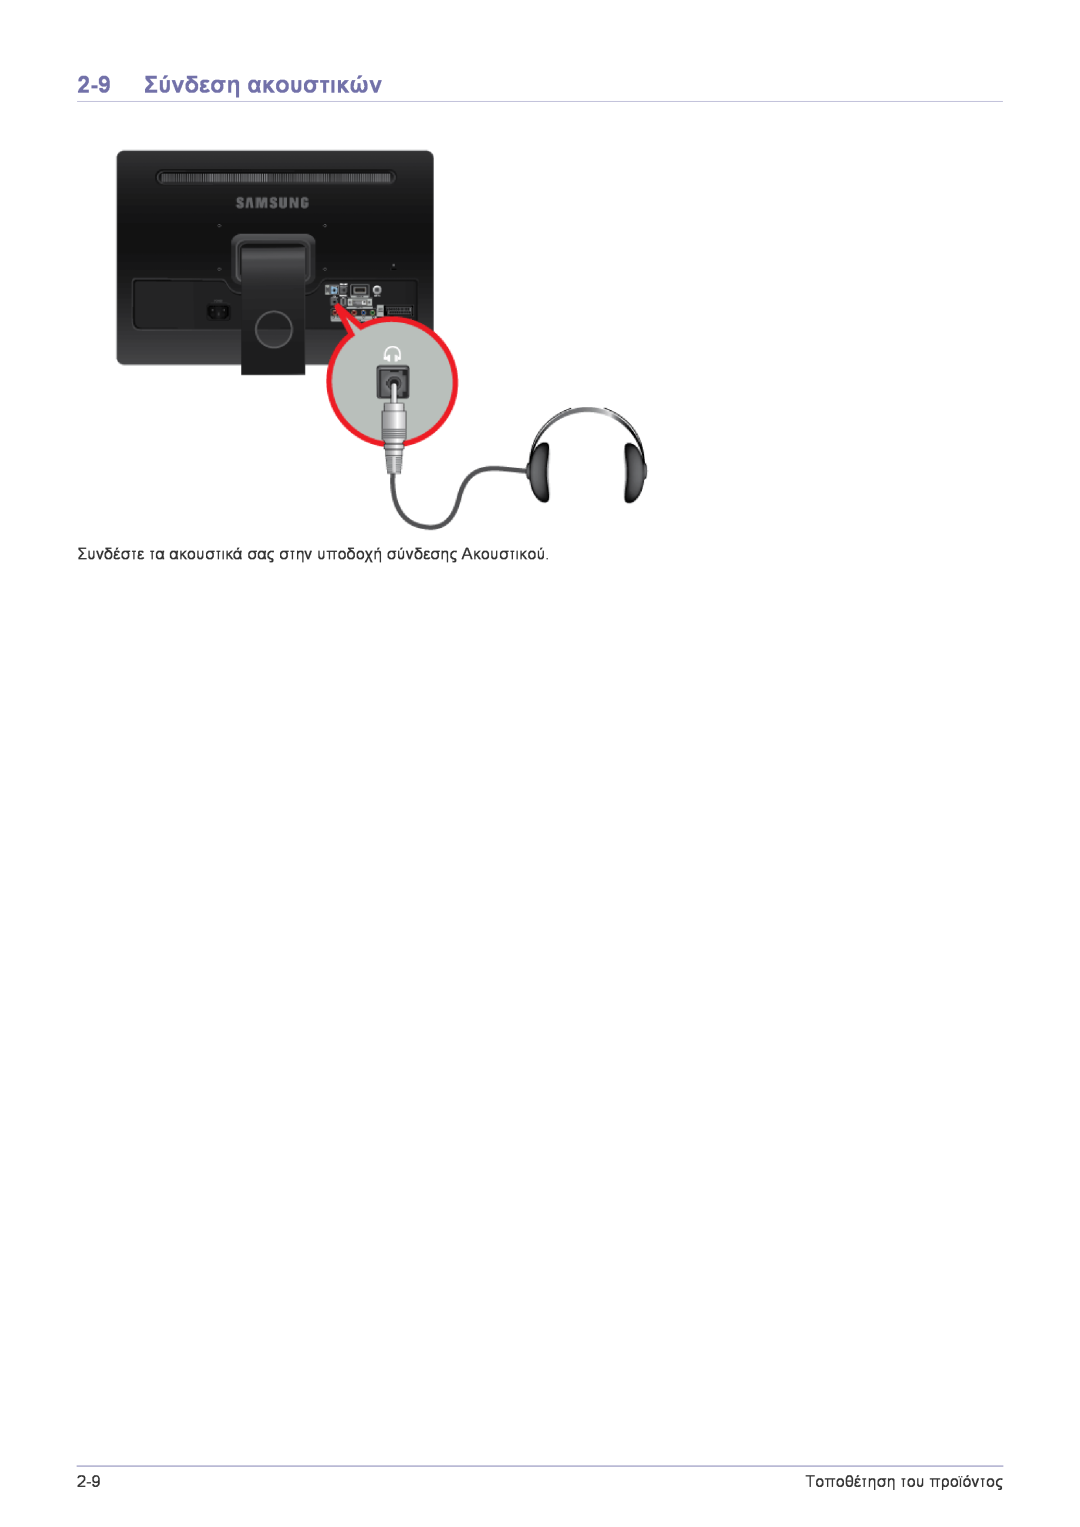 Samsung LS22FMDGF/EN, LS22FMDGF/XE manual 2-9 Σύνδεση ακουστικών, Συνδέστε τα ακουστικά σας στην υποδοχή σύνδεσης Ακουστικού 